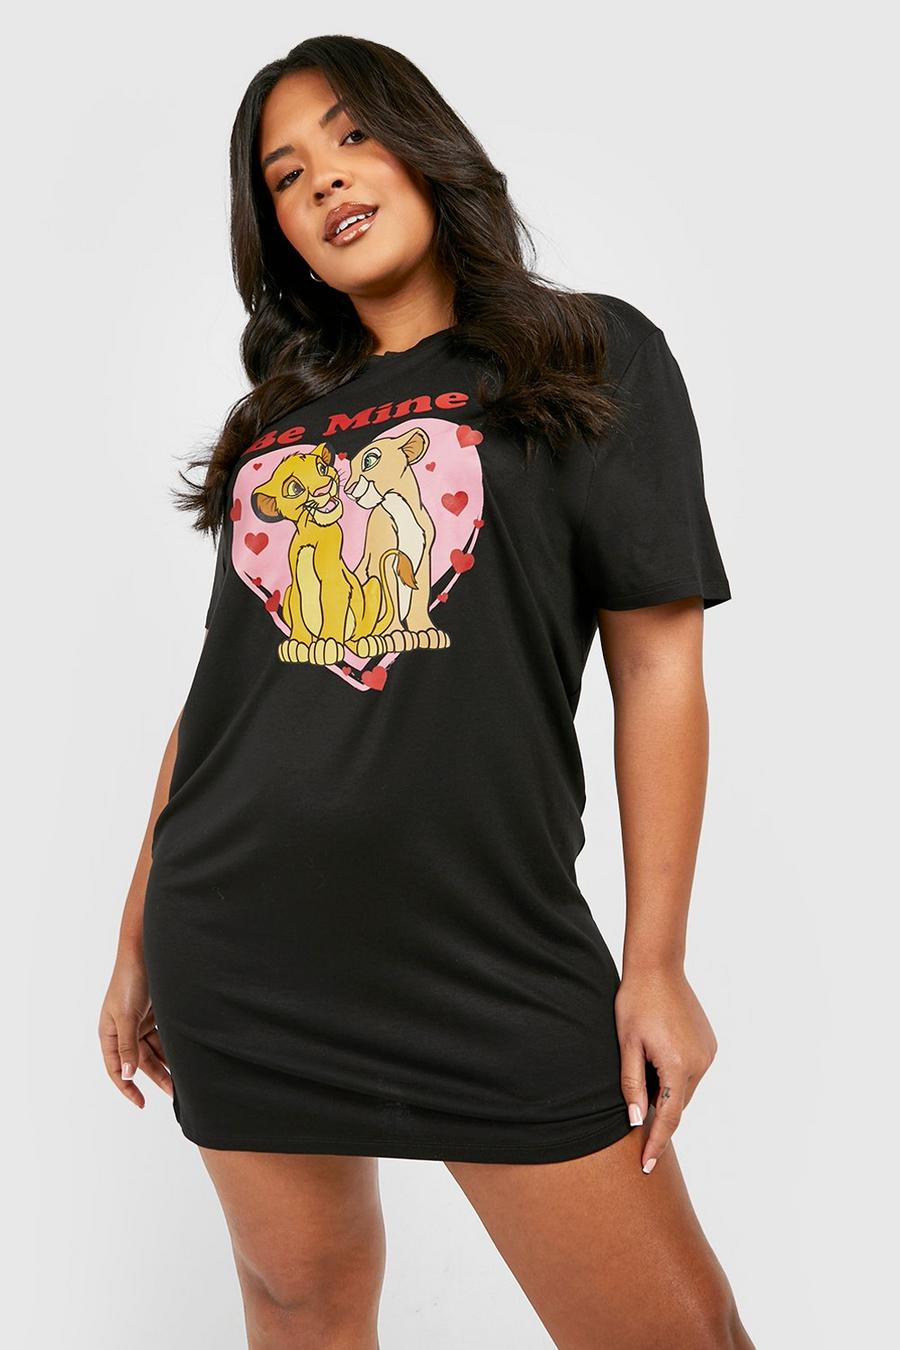 T-shirt pigiama Plus Size Disney di S. Valentino del Re Leone, Black nero